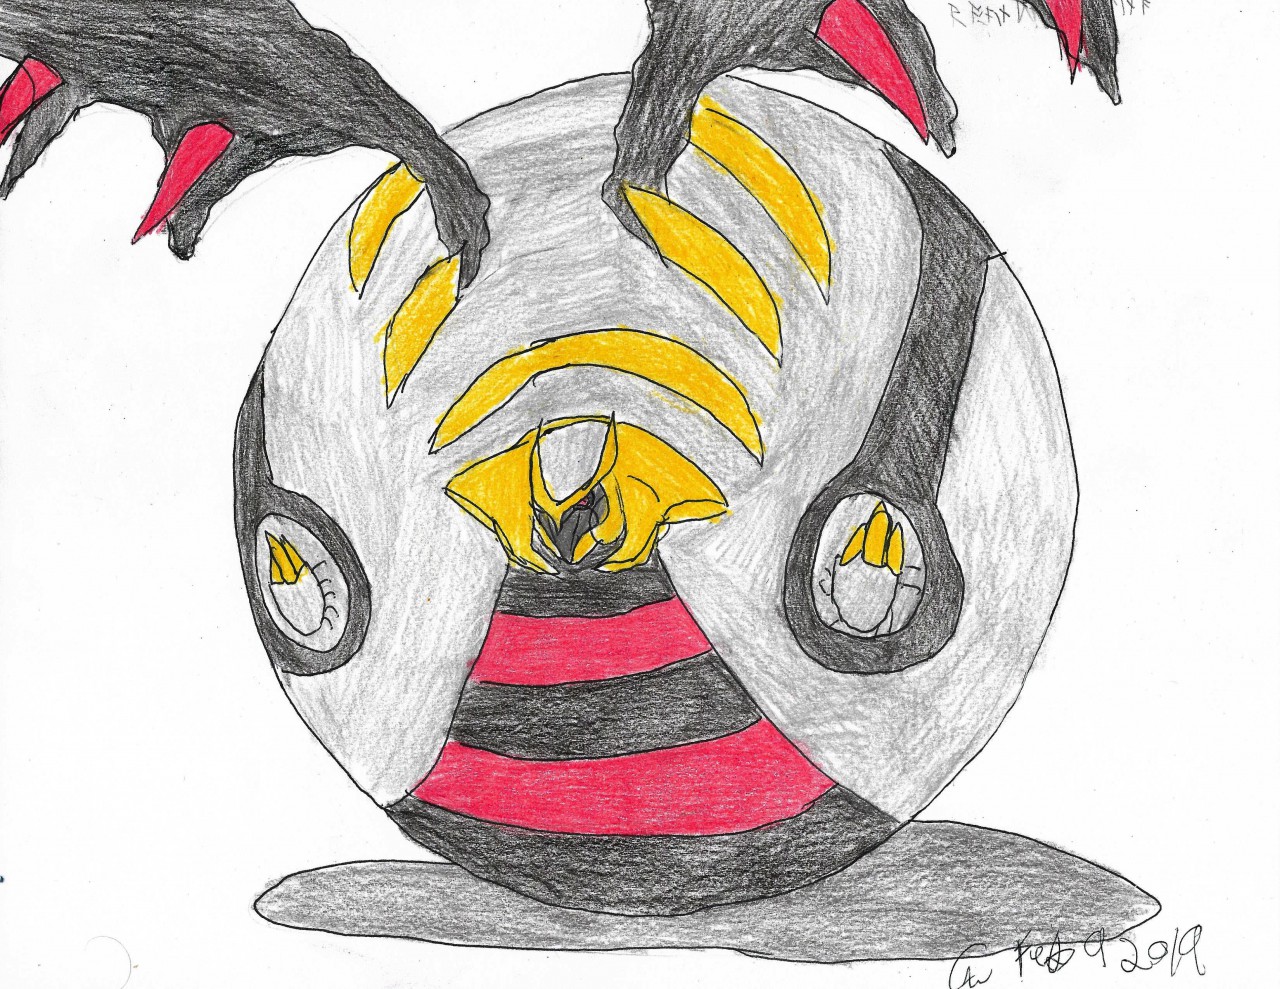 wingull and giratina (pokemon) drawn by rolloekaki